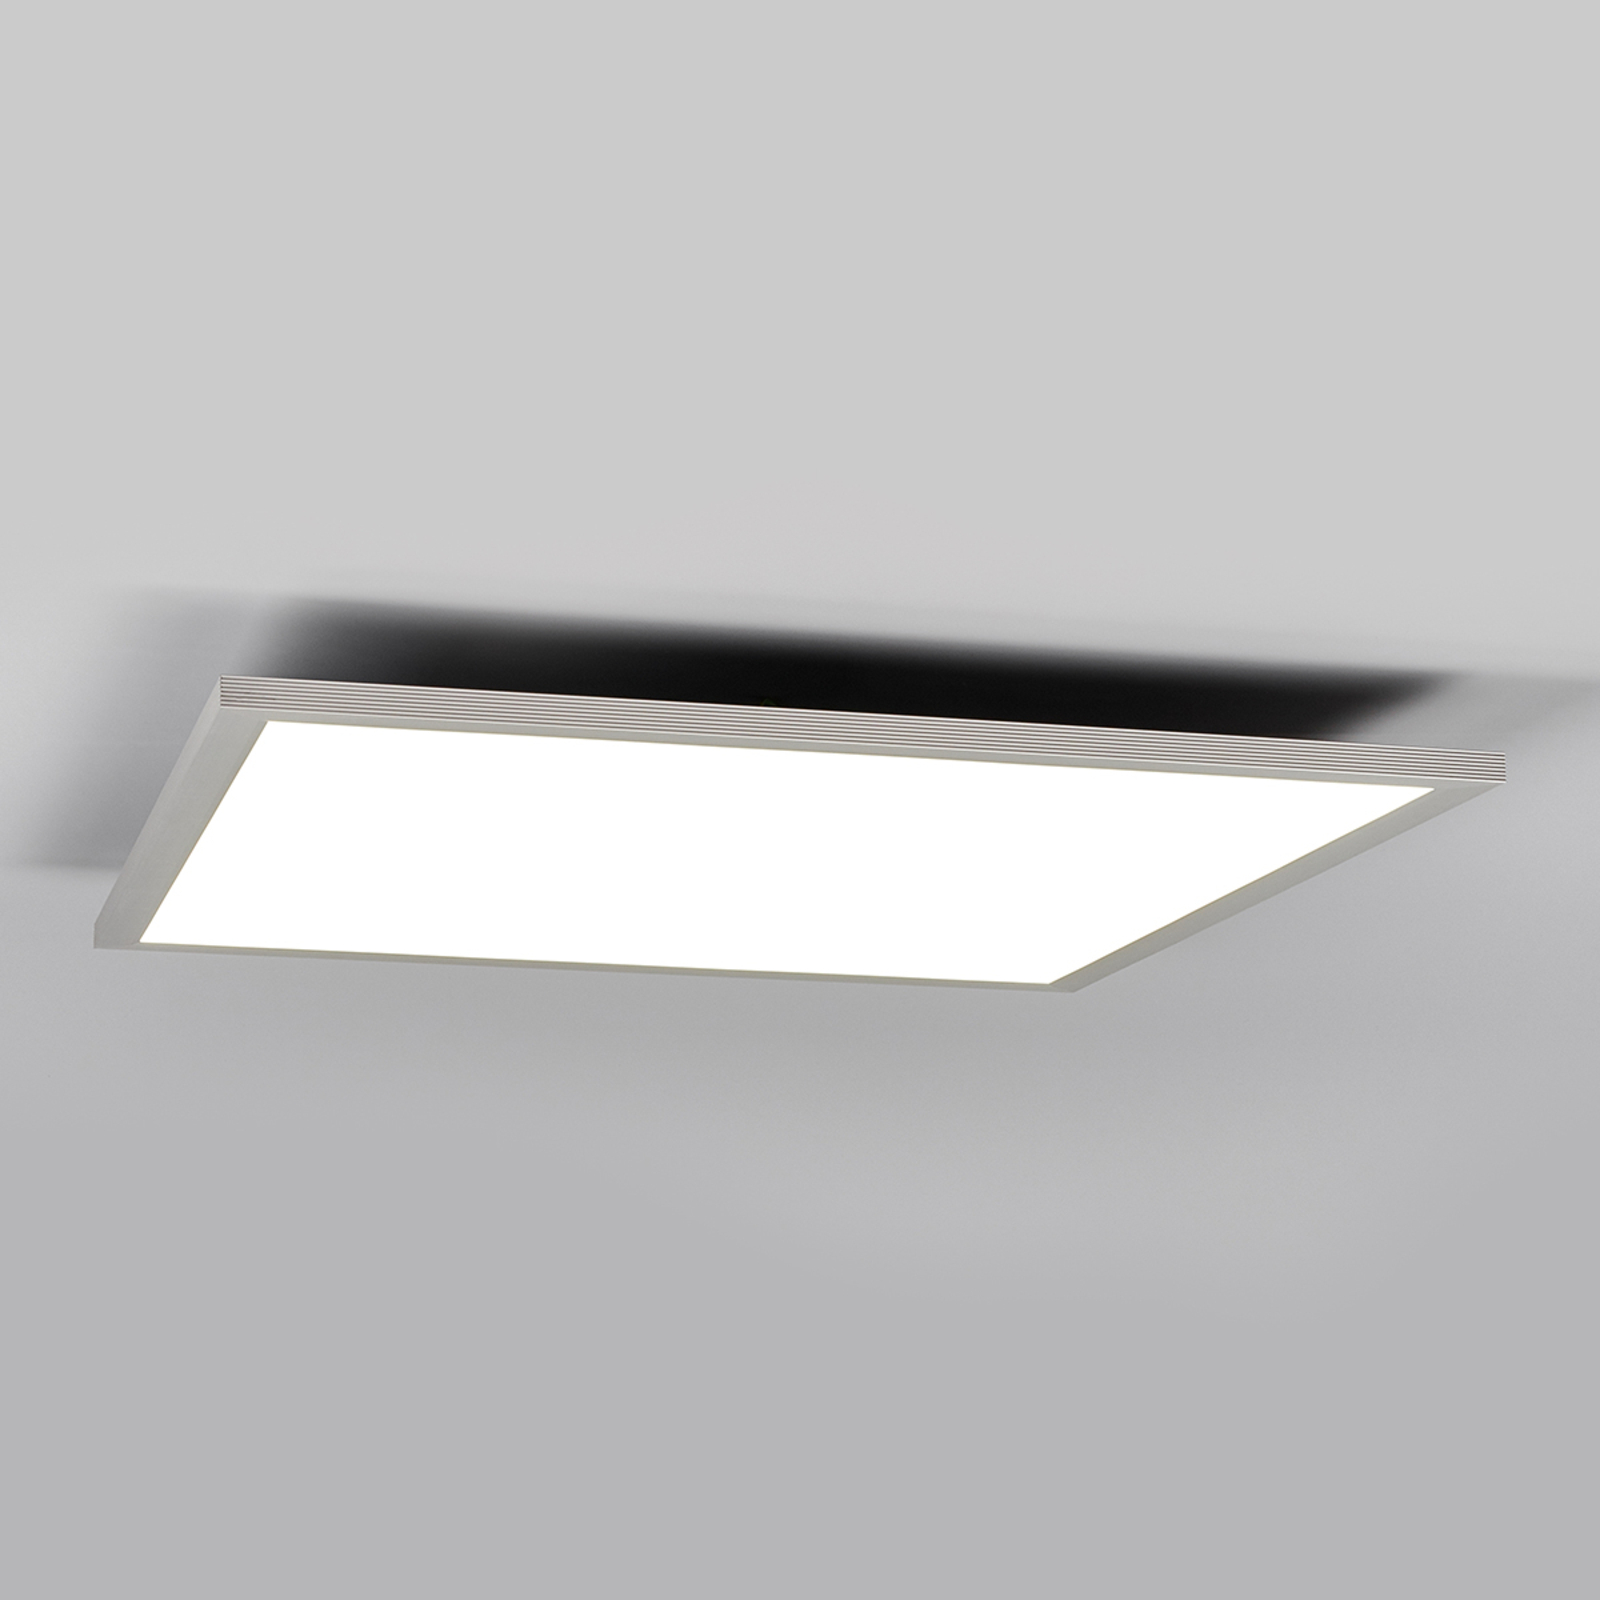 LED-panel 62x62 40w 3600lm plafón cálido/neutral rejilla blanco manta cri > 90 ra